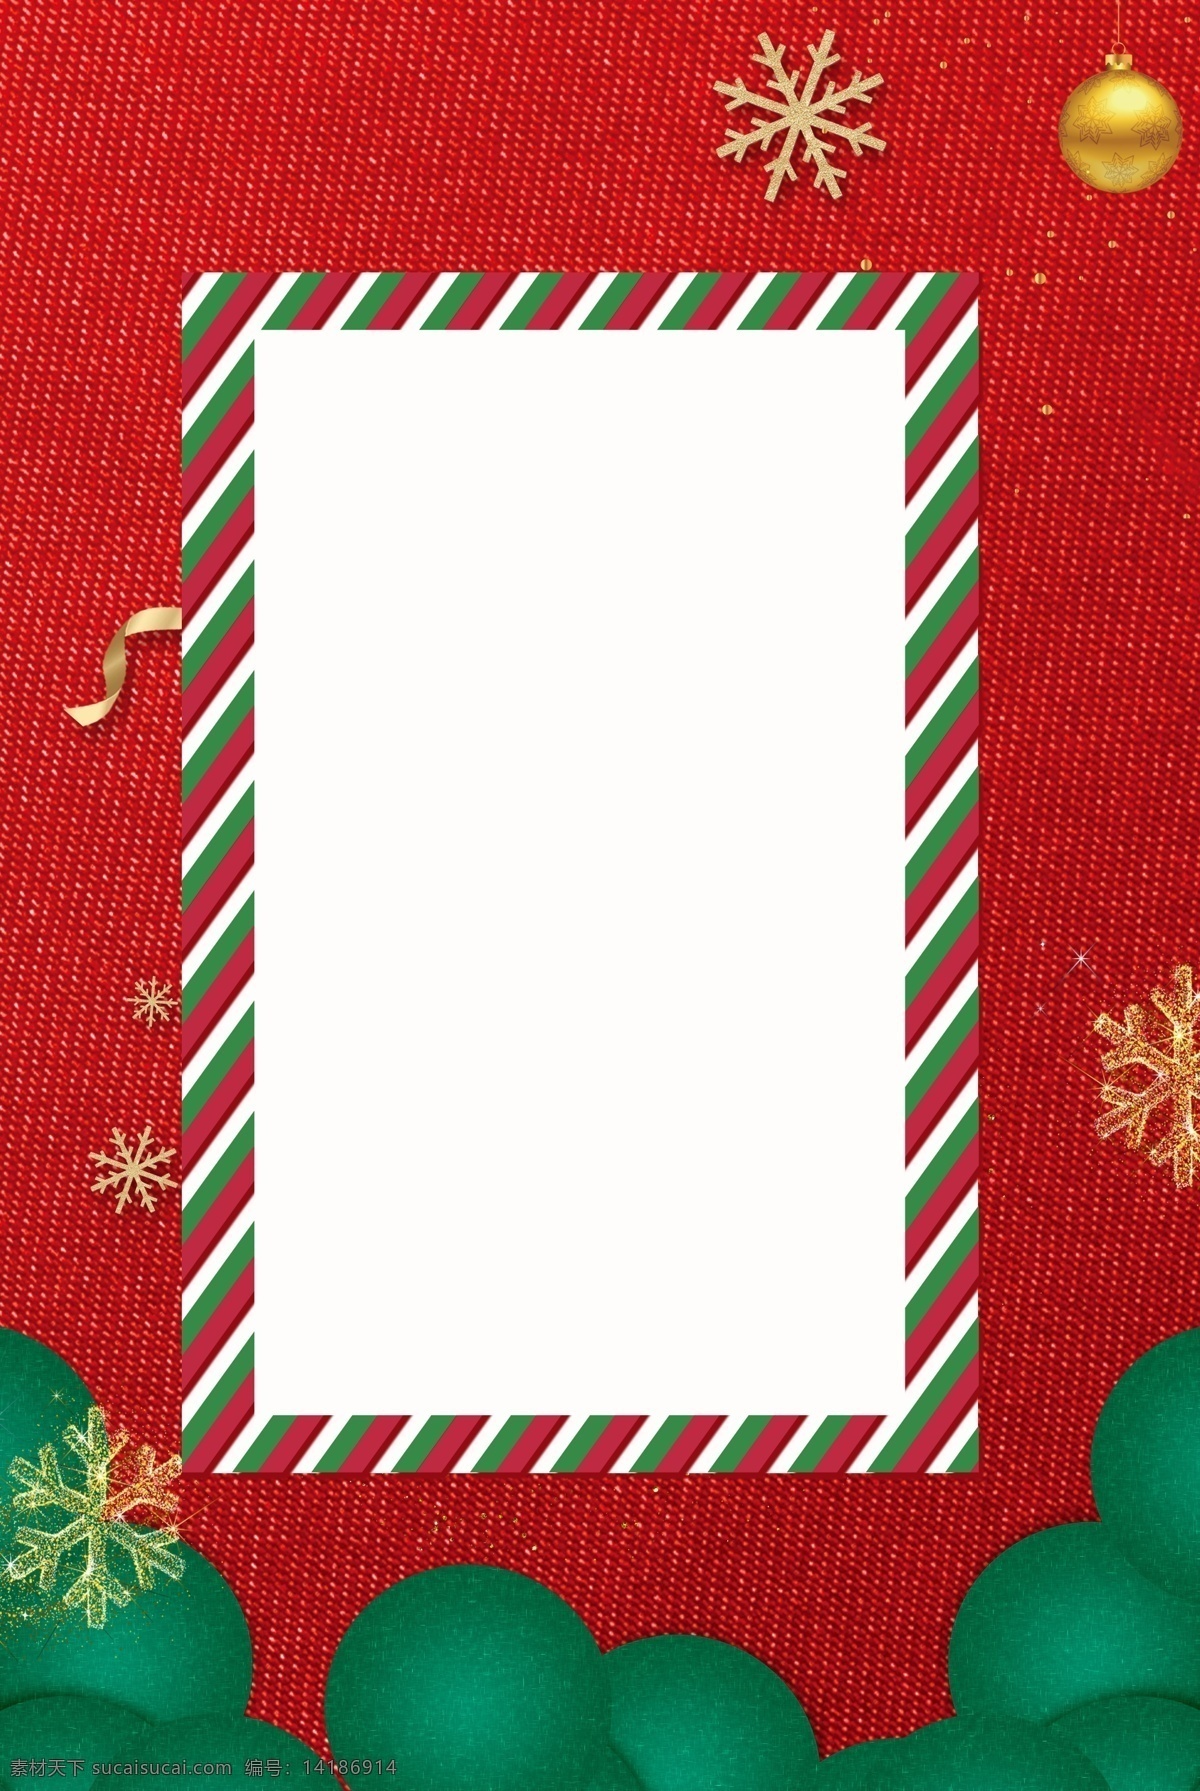 圣诞 剪纸 风 红色 几何 扁平 背景 简约 圣诞节剪纸风 大气 红色背景 圣诞节 圣诞剪纸风 促销 雪花 丝带 大促海报